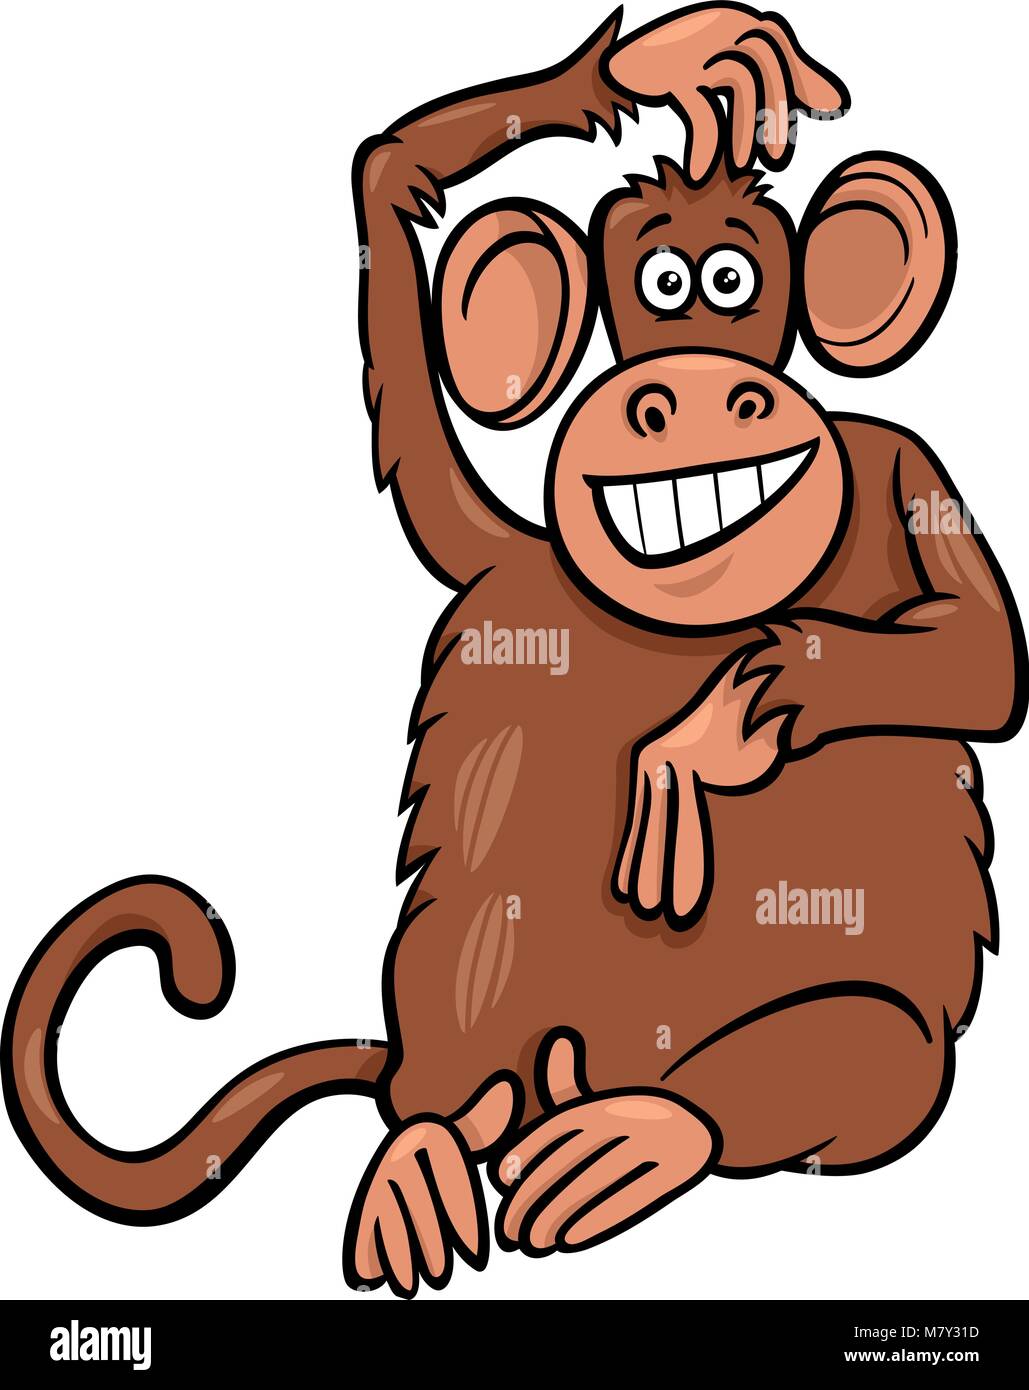 funny cartoon monkey